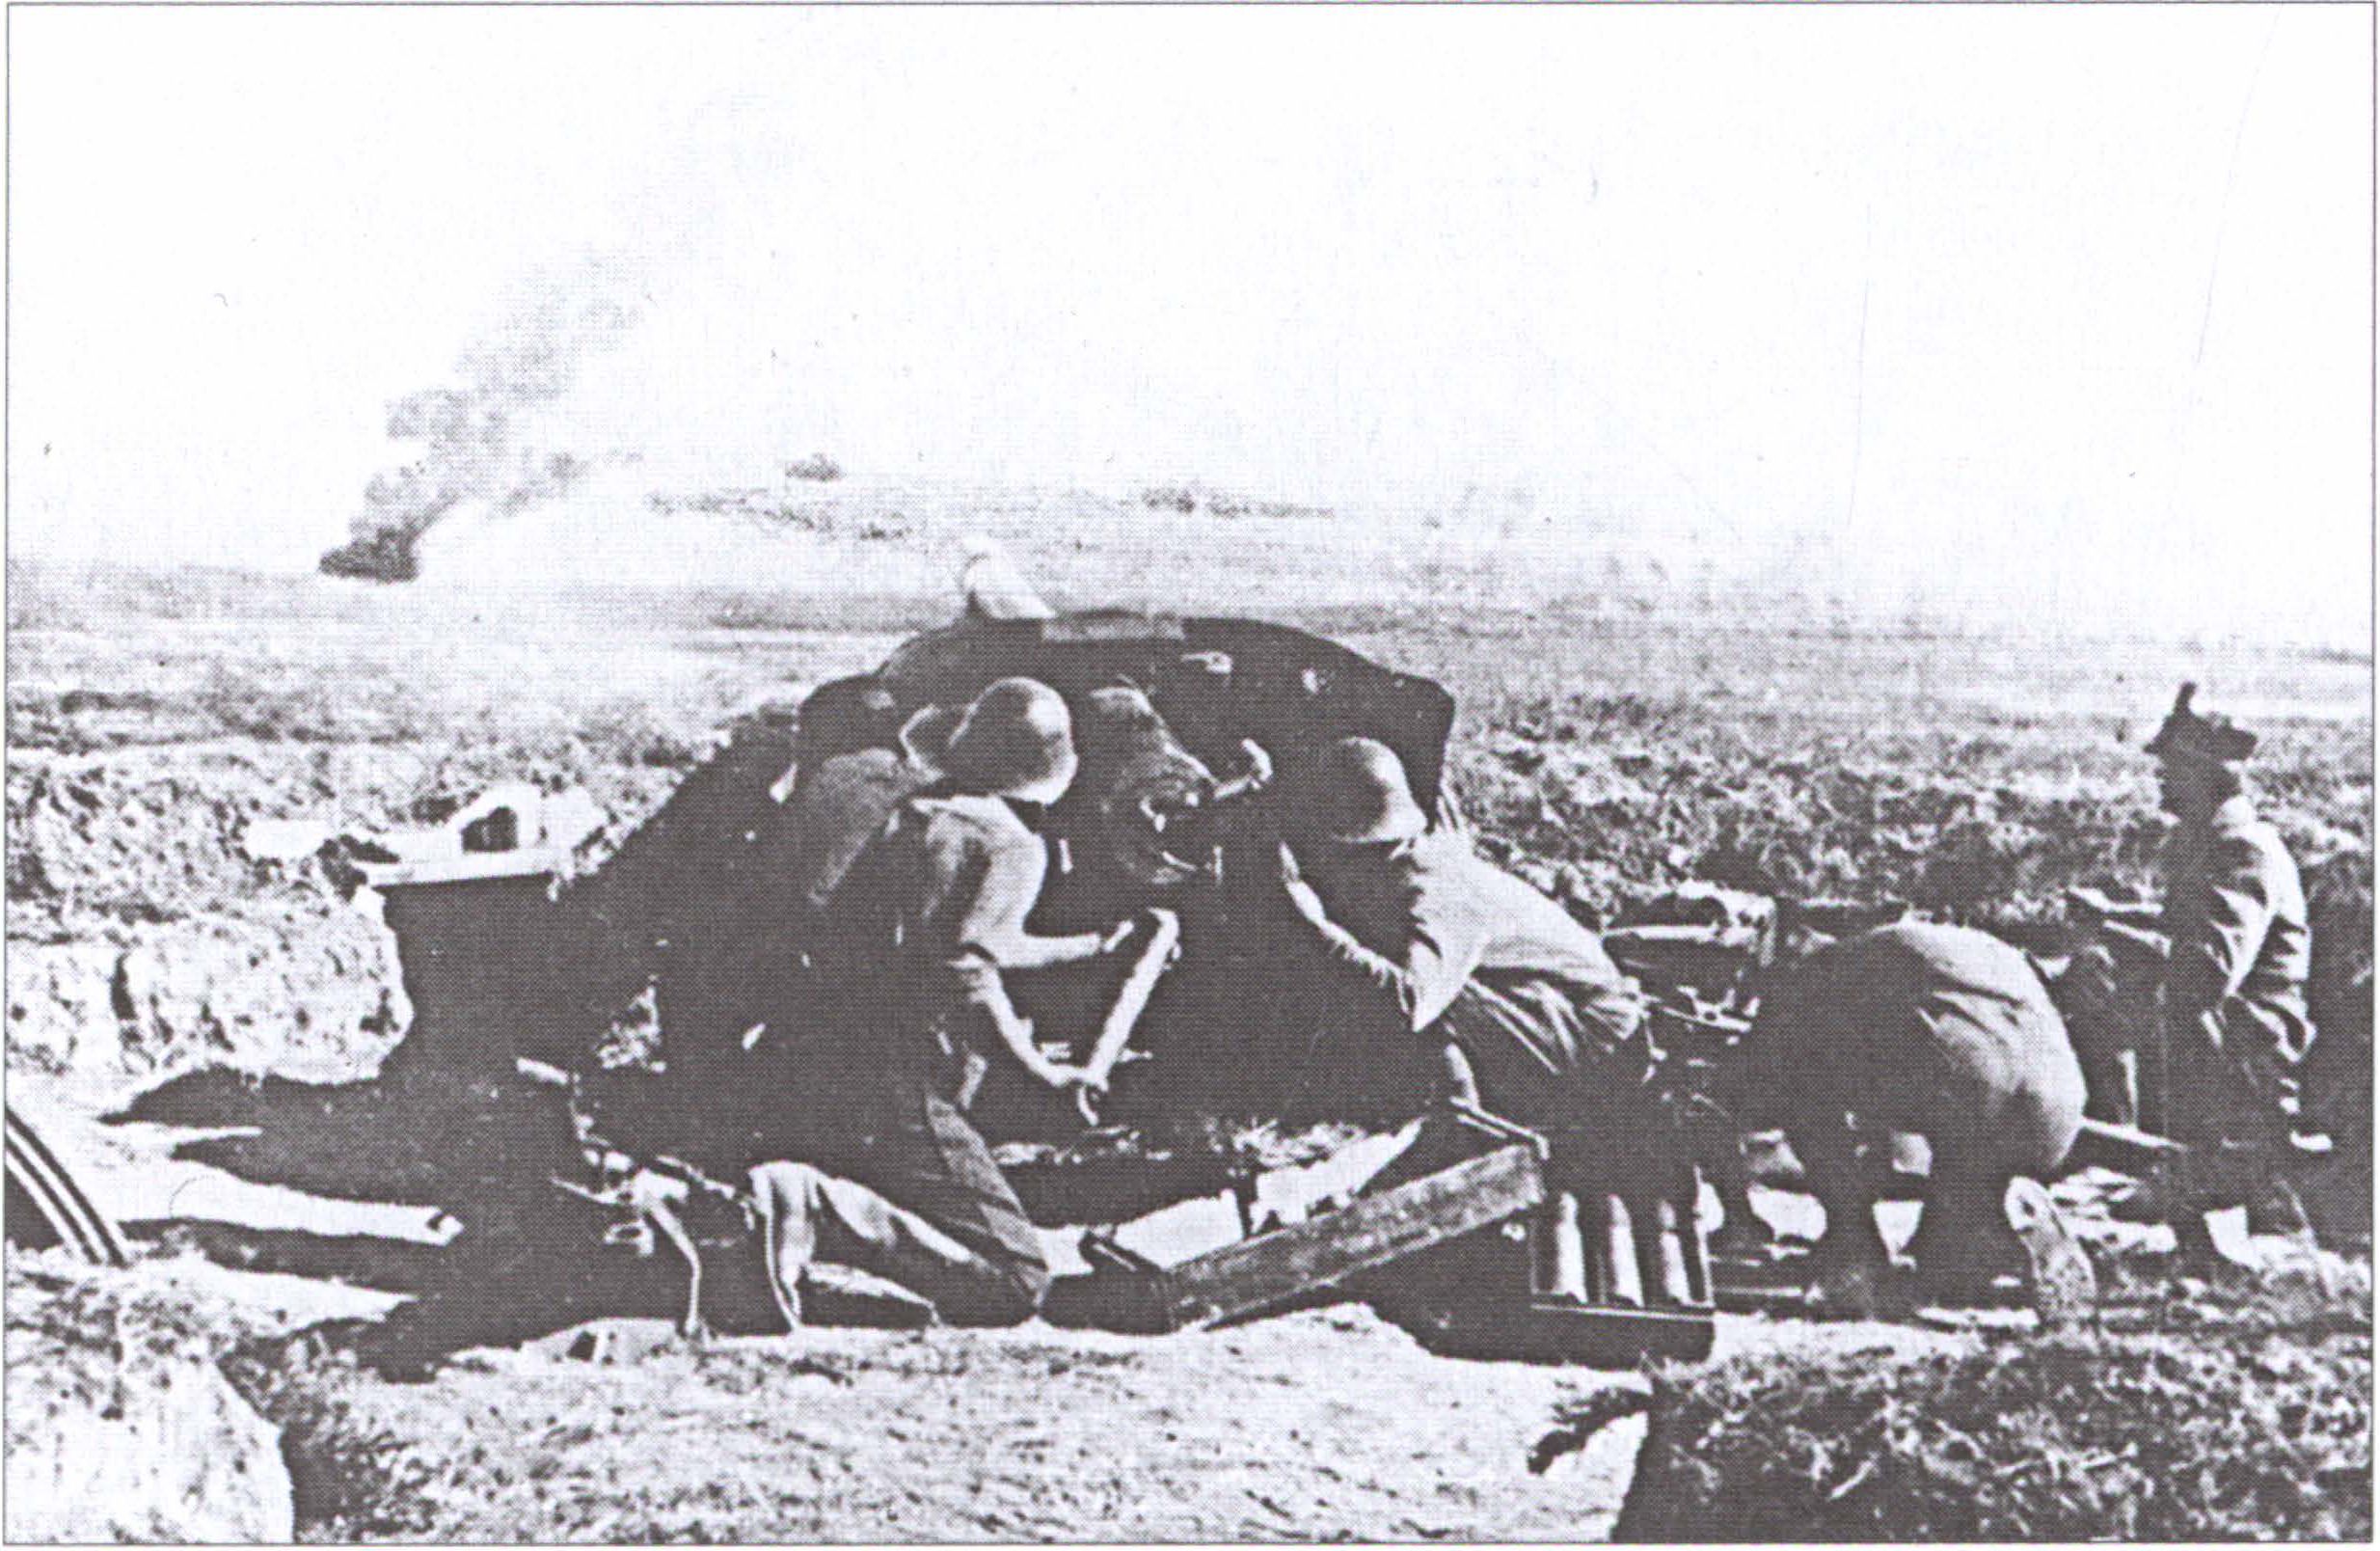 Румынские артиллеристы ведут огонь из противотанковой пушки во время боя в Крыму. 27 марта 1944 г.